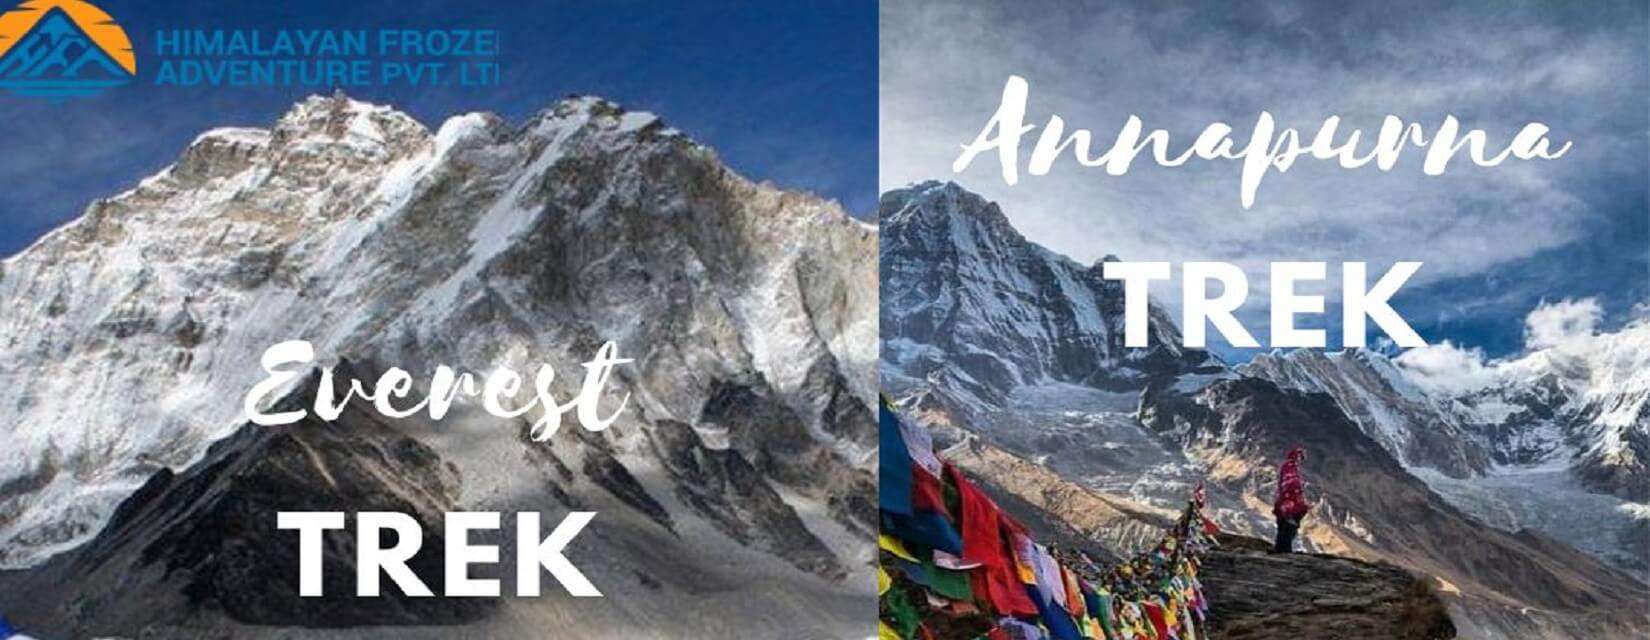 Everest & Annapurna